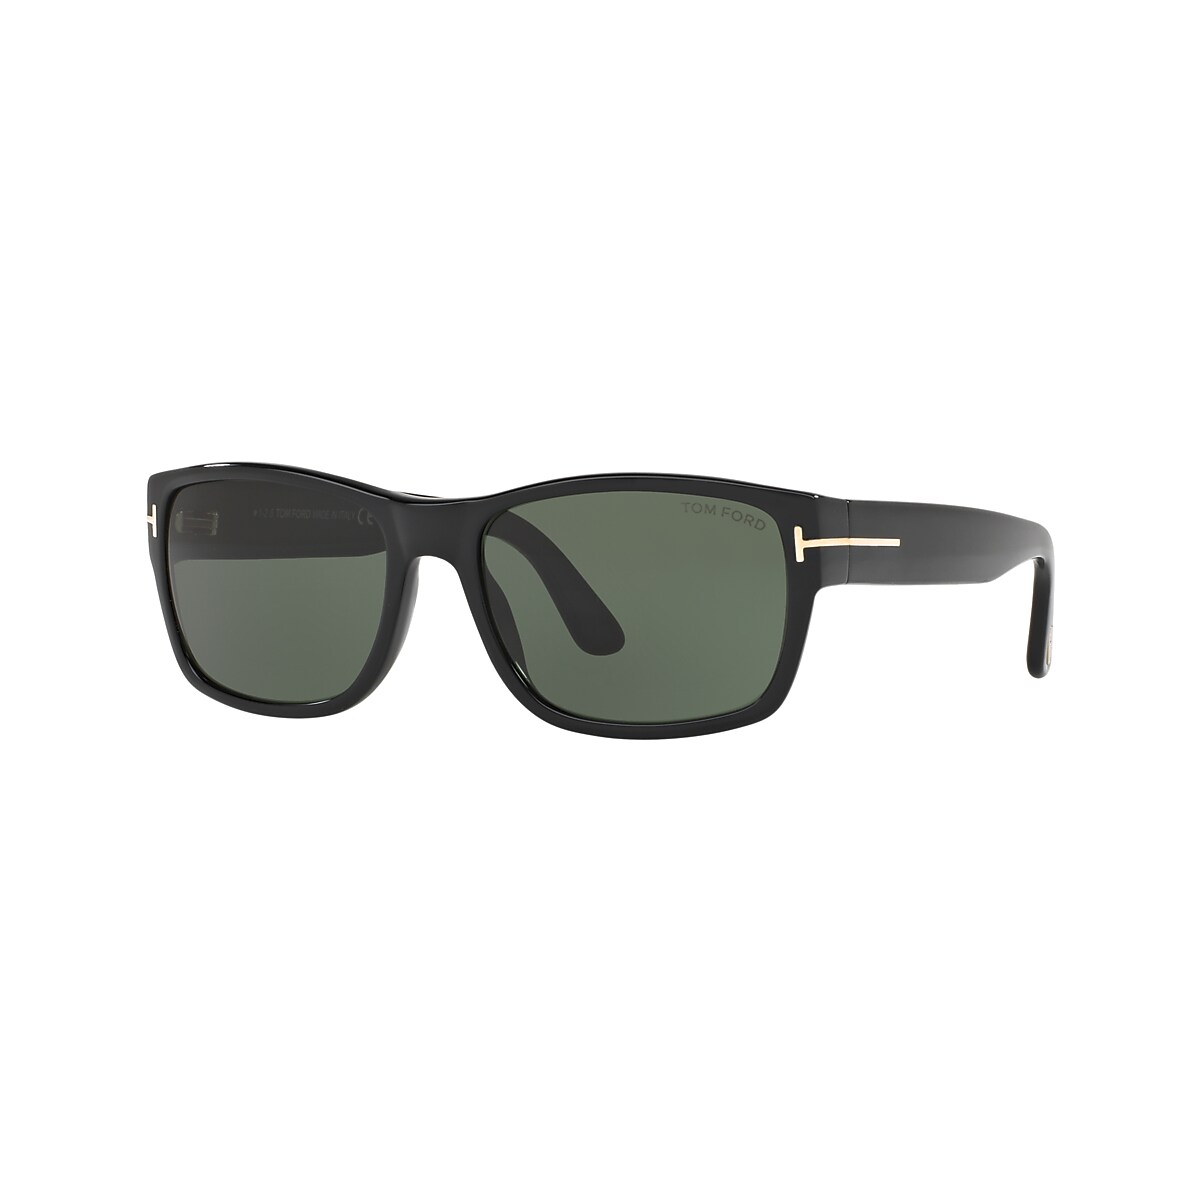 Tom Ford FT0445 MASON 58 Green & Black Sunglasses | Sunglass Hut Australia